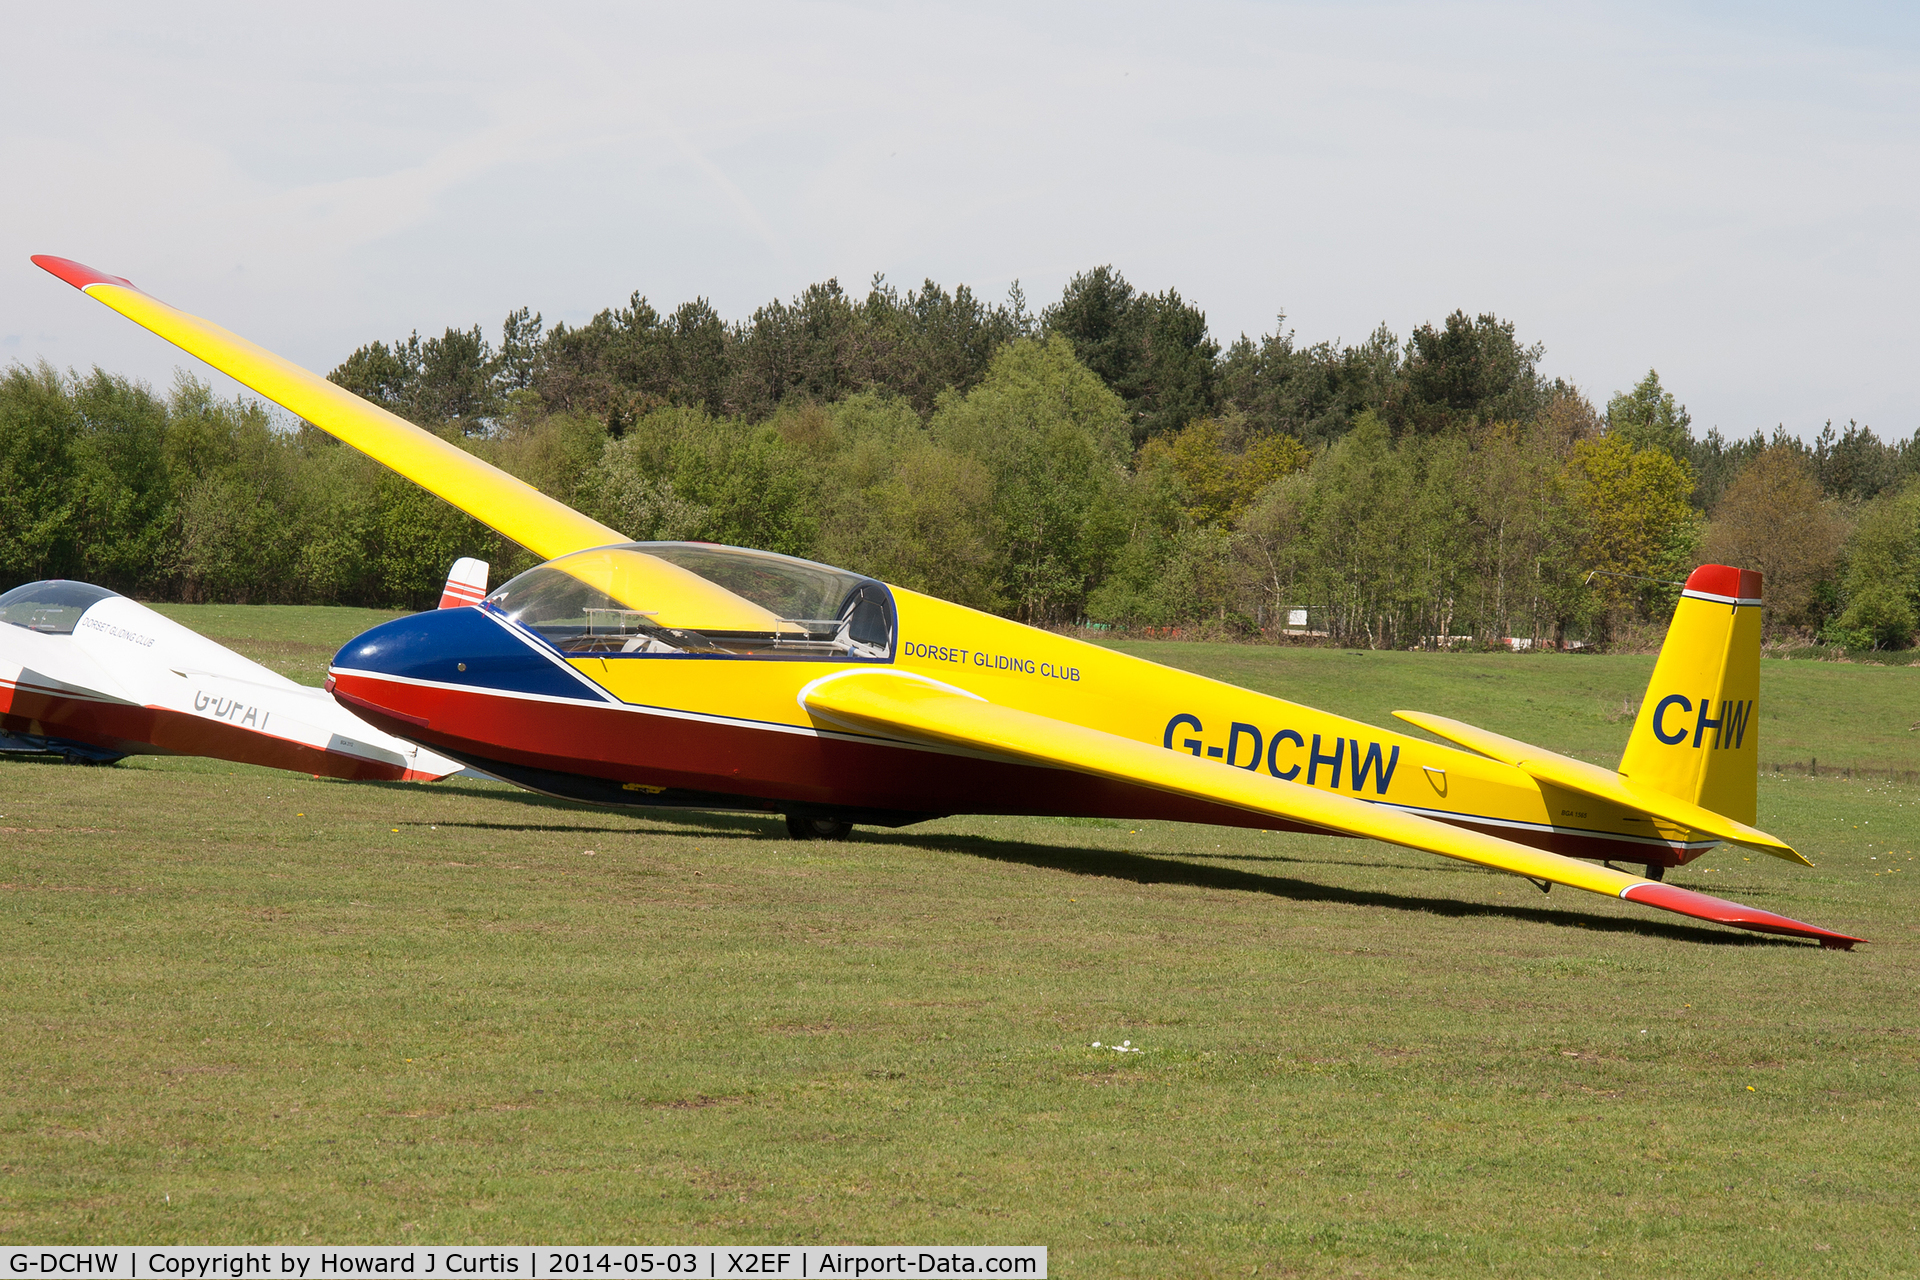 G-DCHW, 1969 Schleicher ASK-13 C/N 13187, Dorset Gliding Club